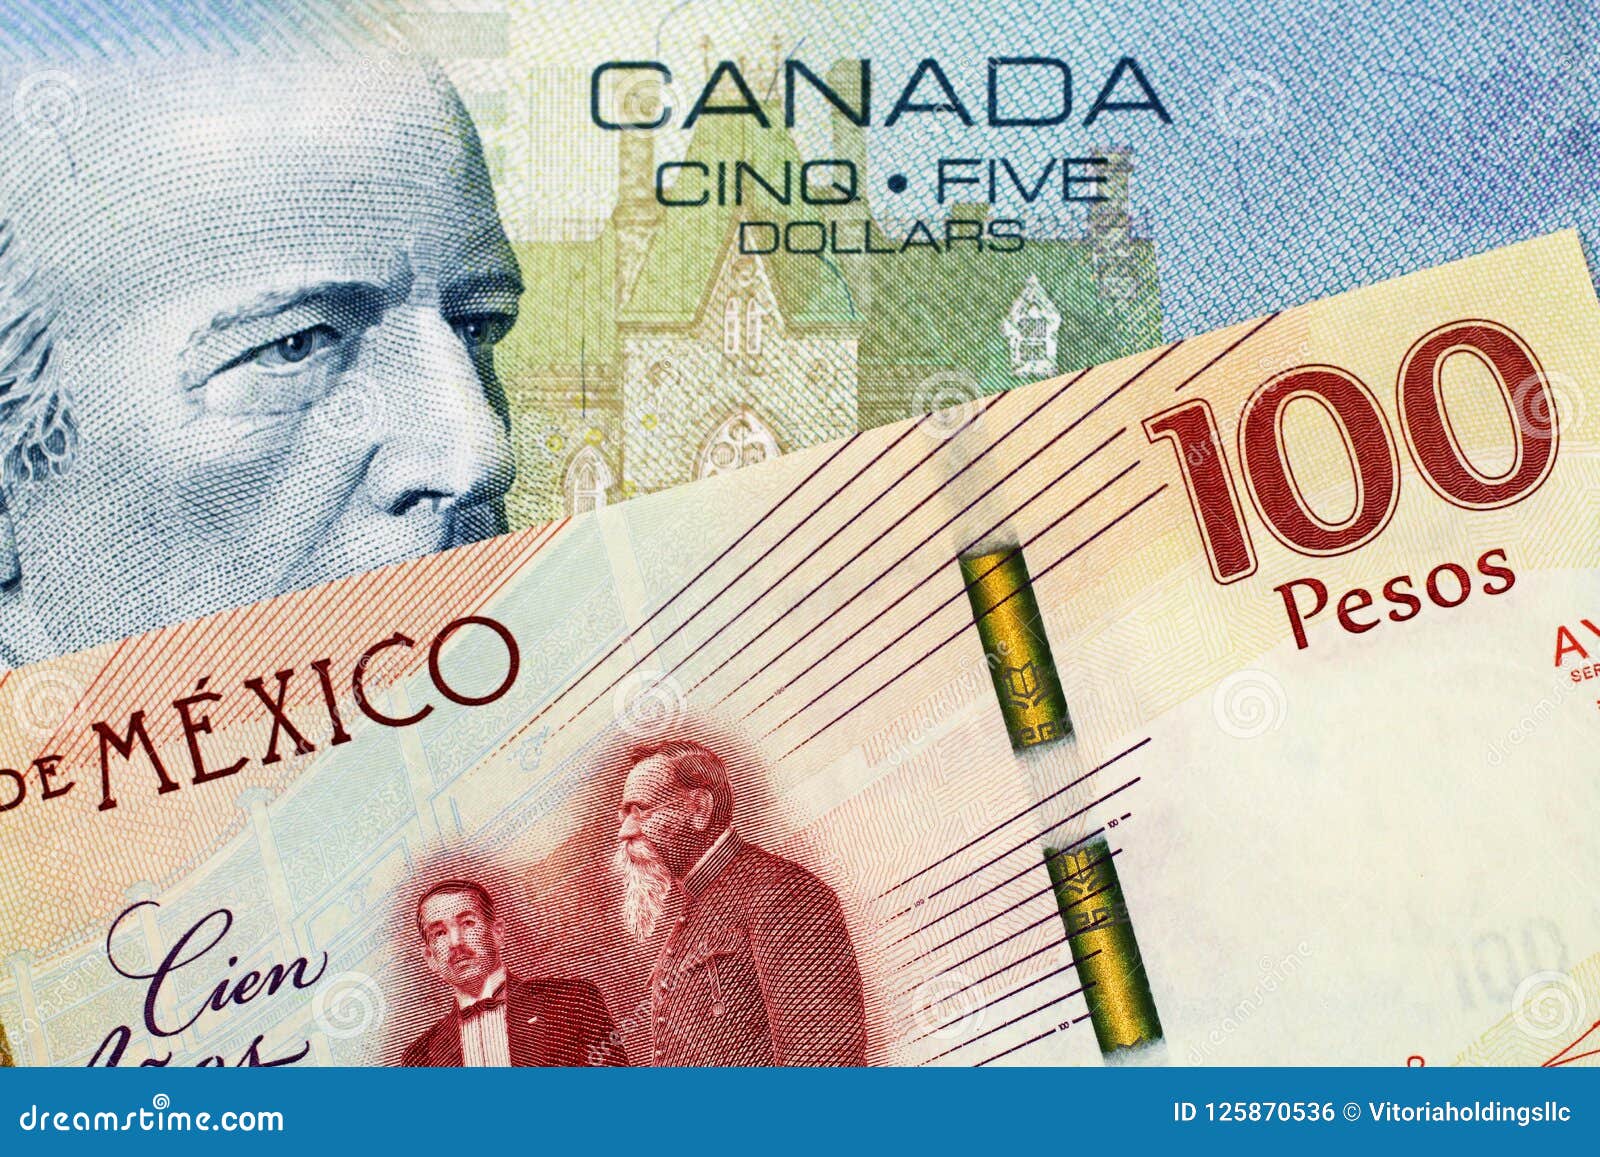 Мексиканские песо в доллары. Мексиканское песо и канадский доллар. Canadian $5 and $100 Bills. Банка песо. 5850 Pesos to Dollars.